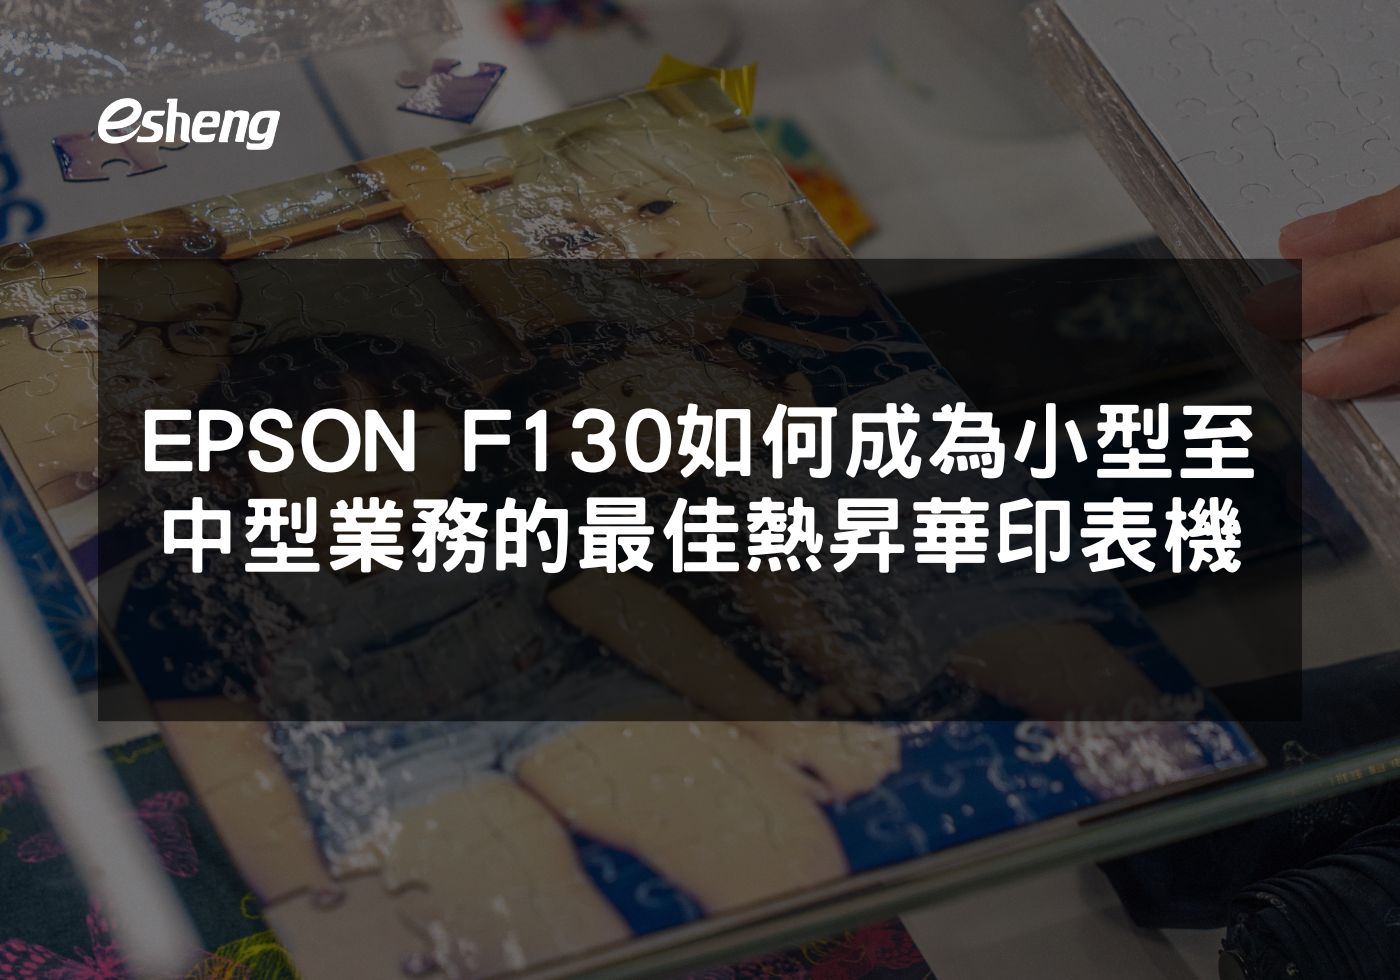 EPSON F130 如何成為小型至中型業務的最佳熱昇華印表機